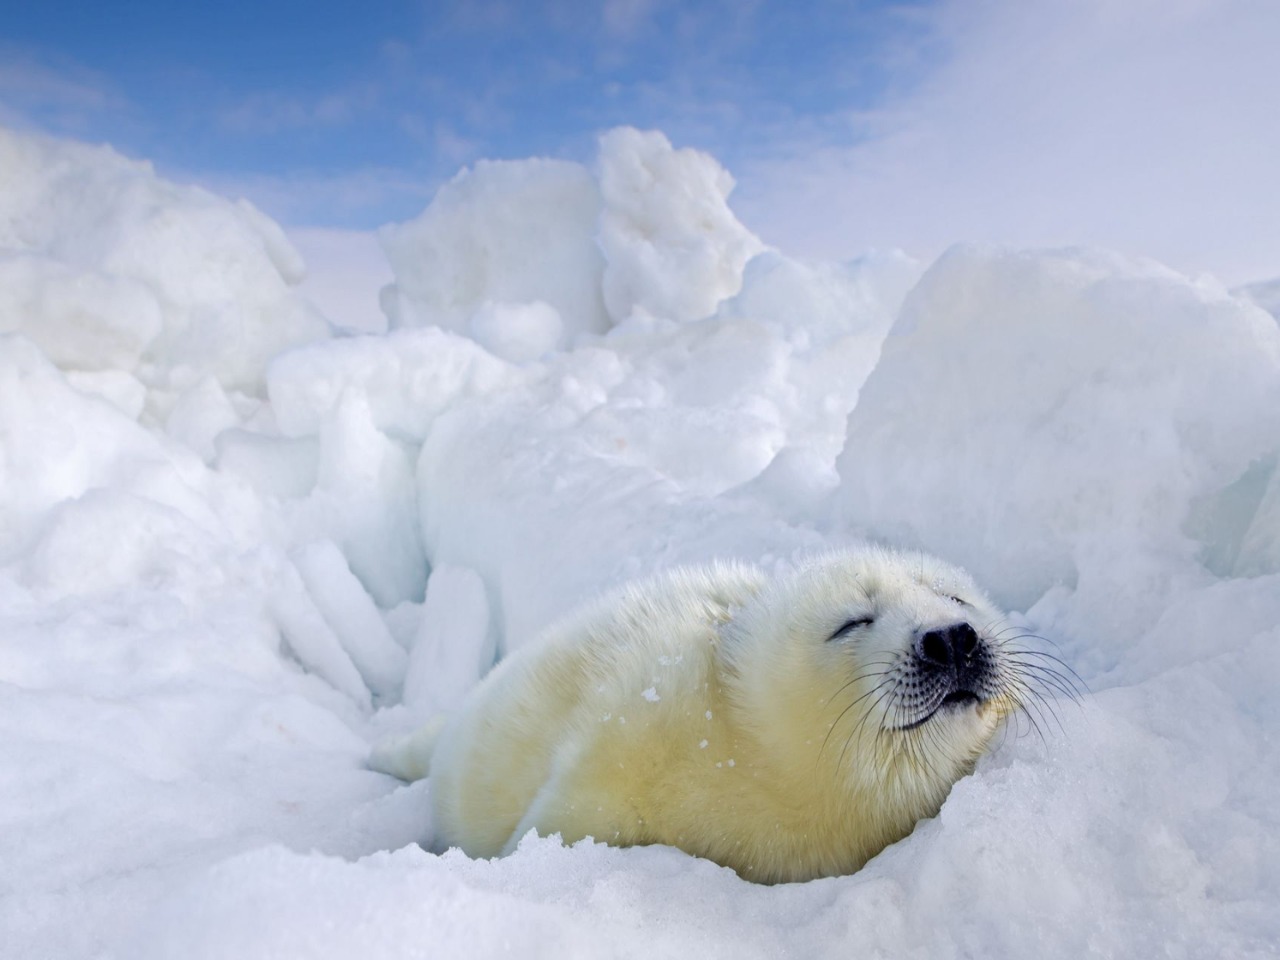 Экспедиция к белькам гренландских тюленей | Цена 263000₽, отзывы, описание экскурсии